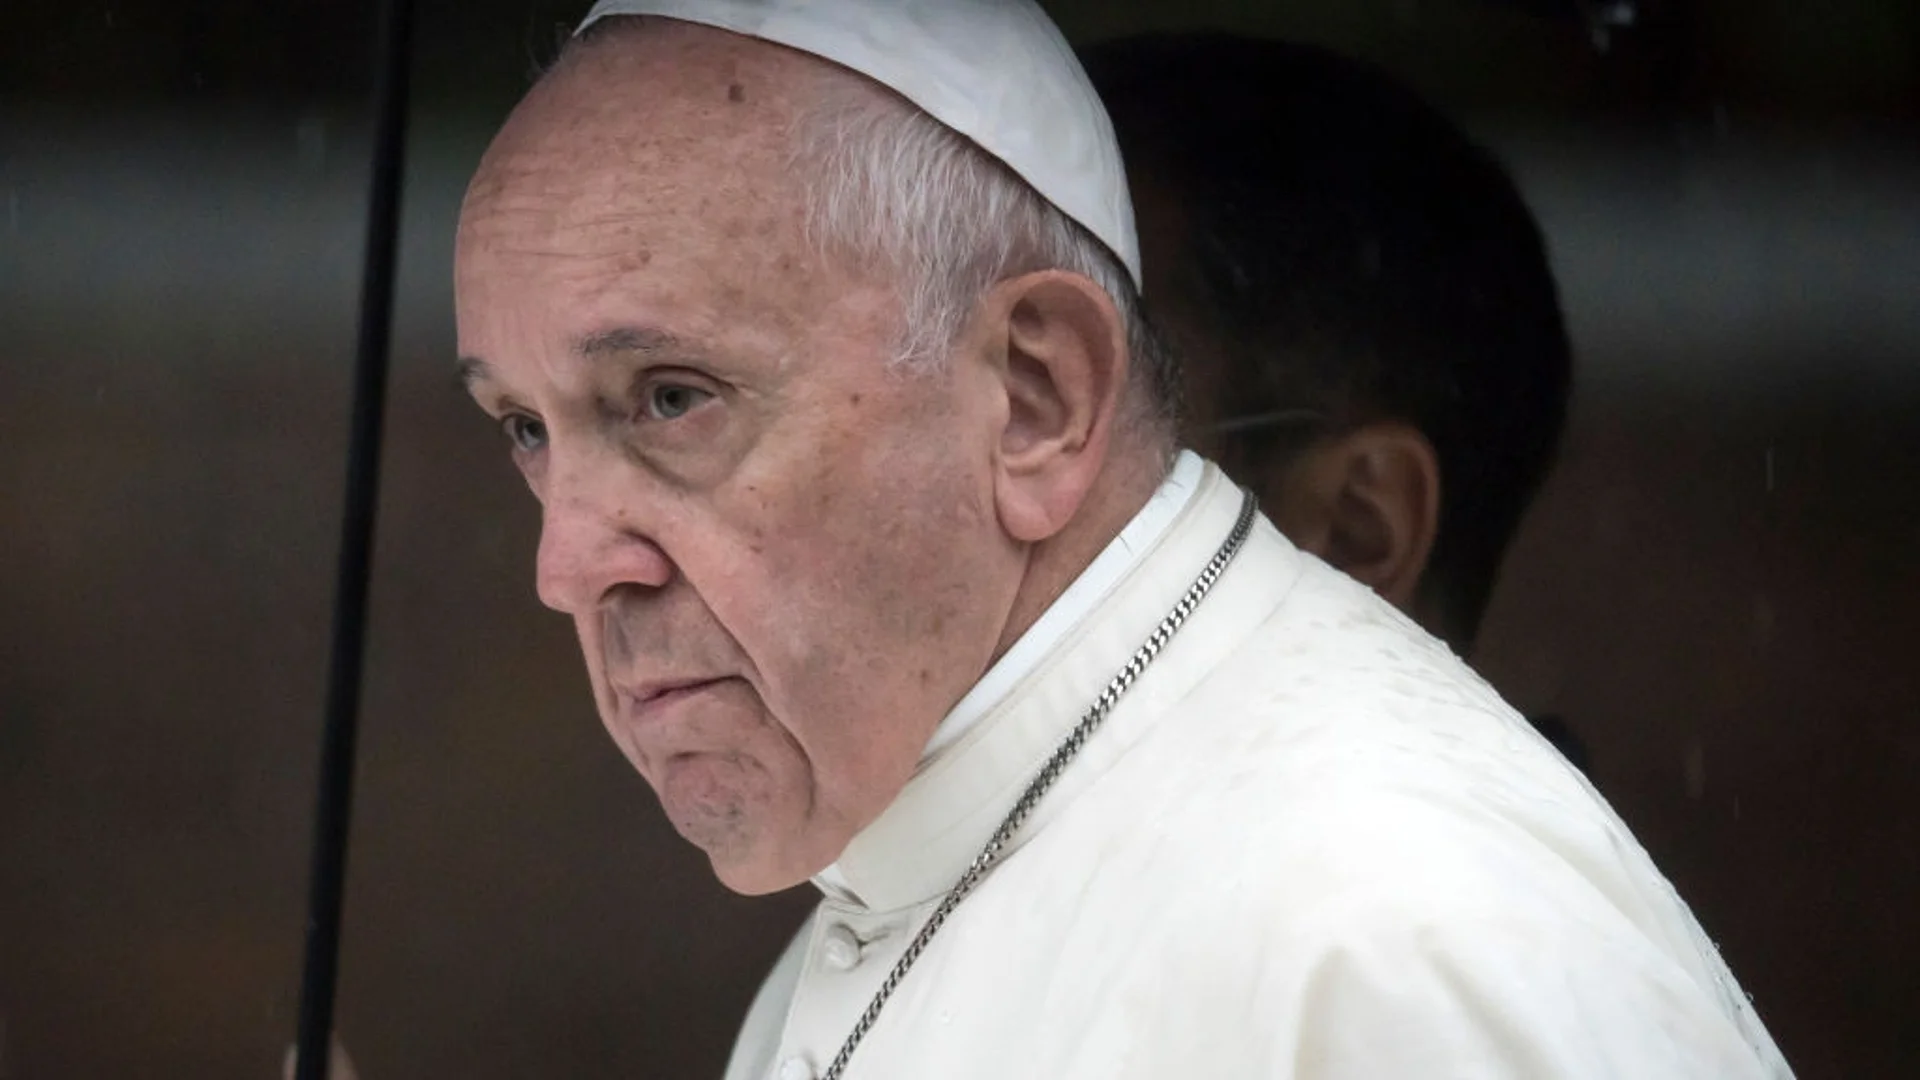 Папата иска да помогне за обмена на пленници между Украйна и Русия